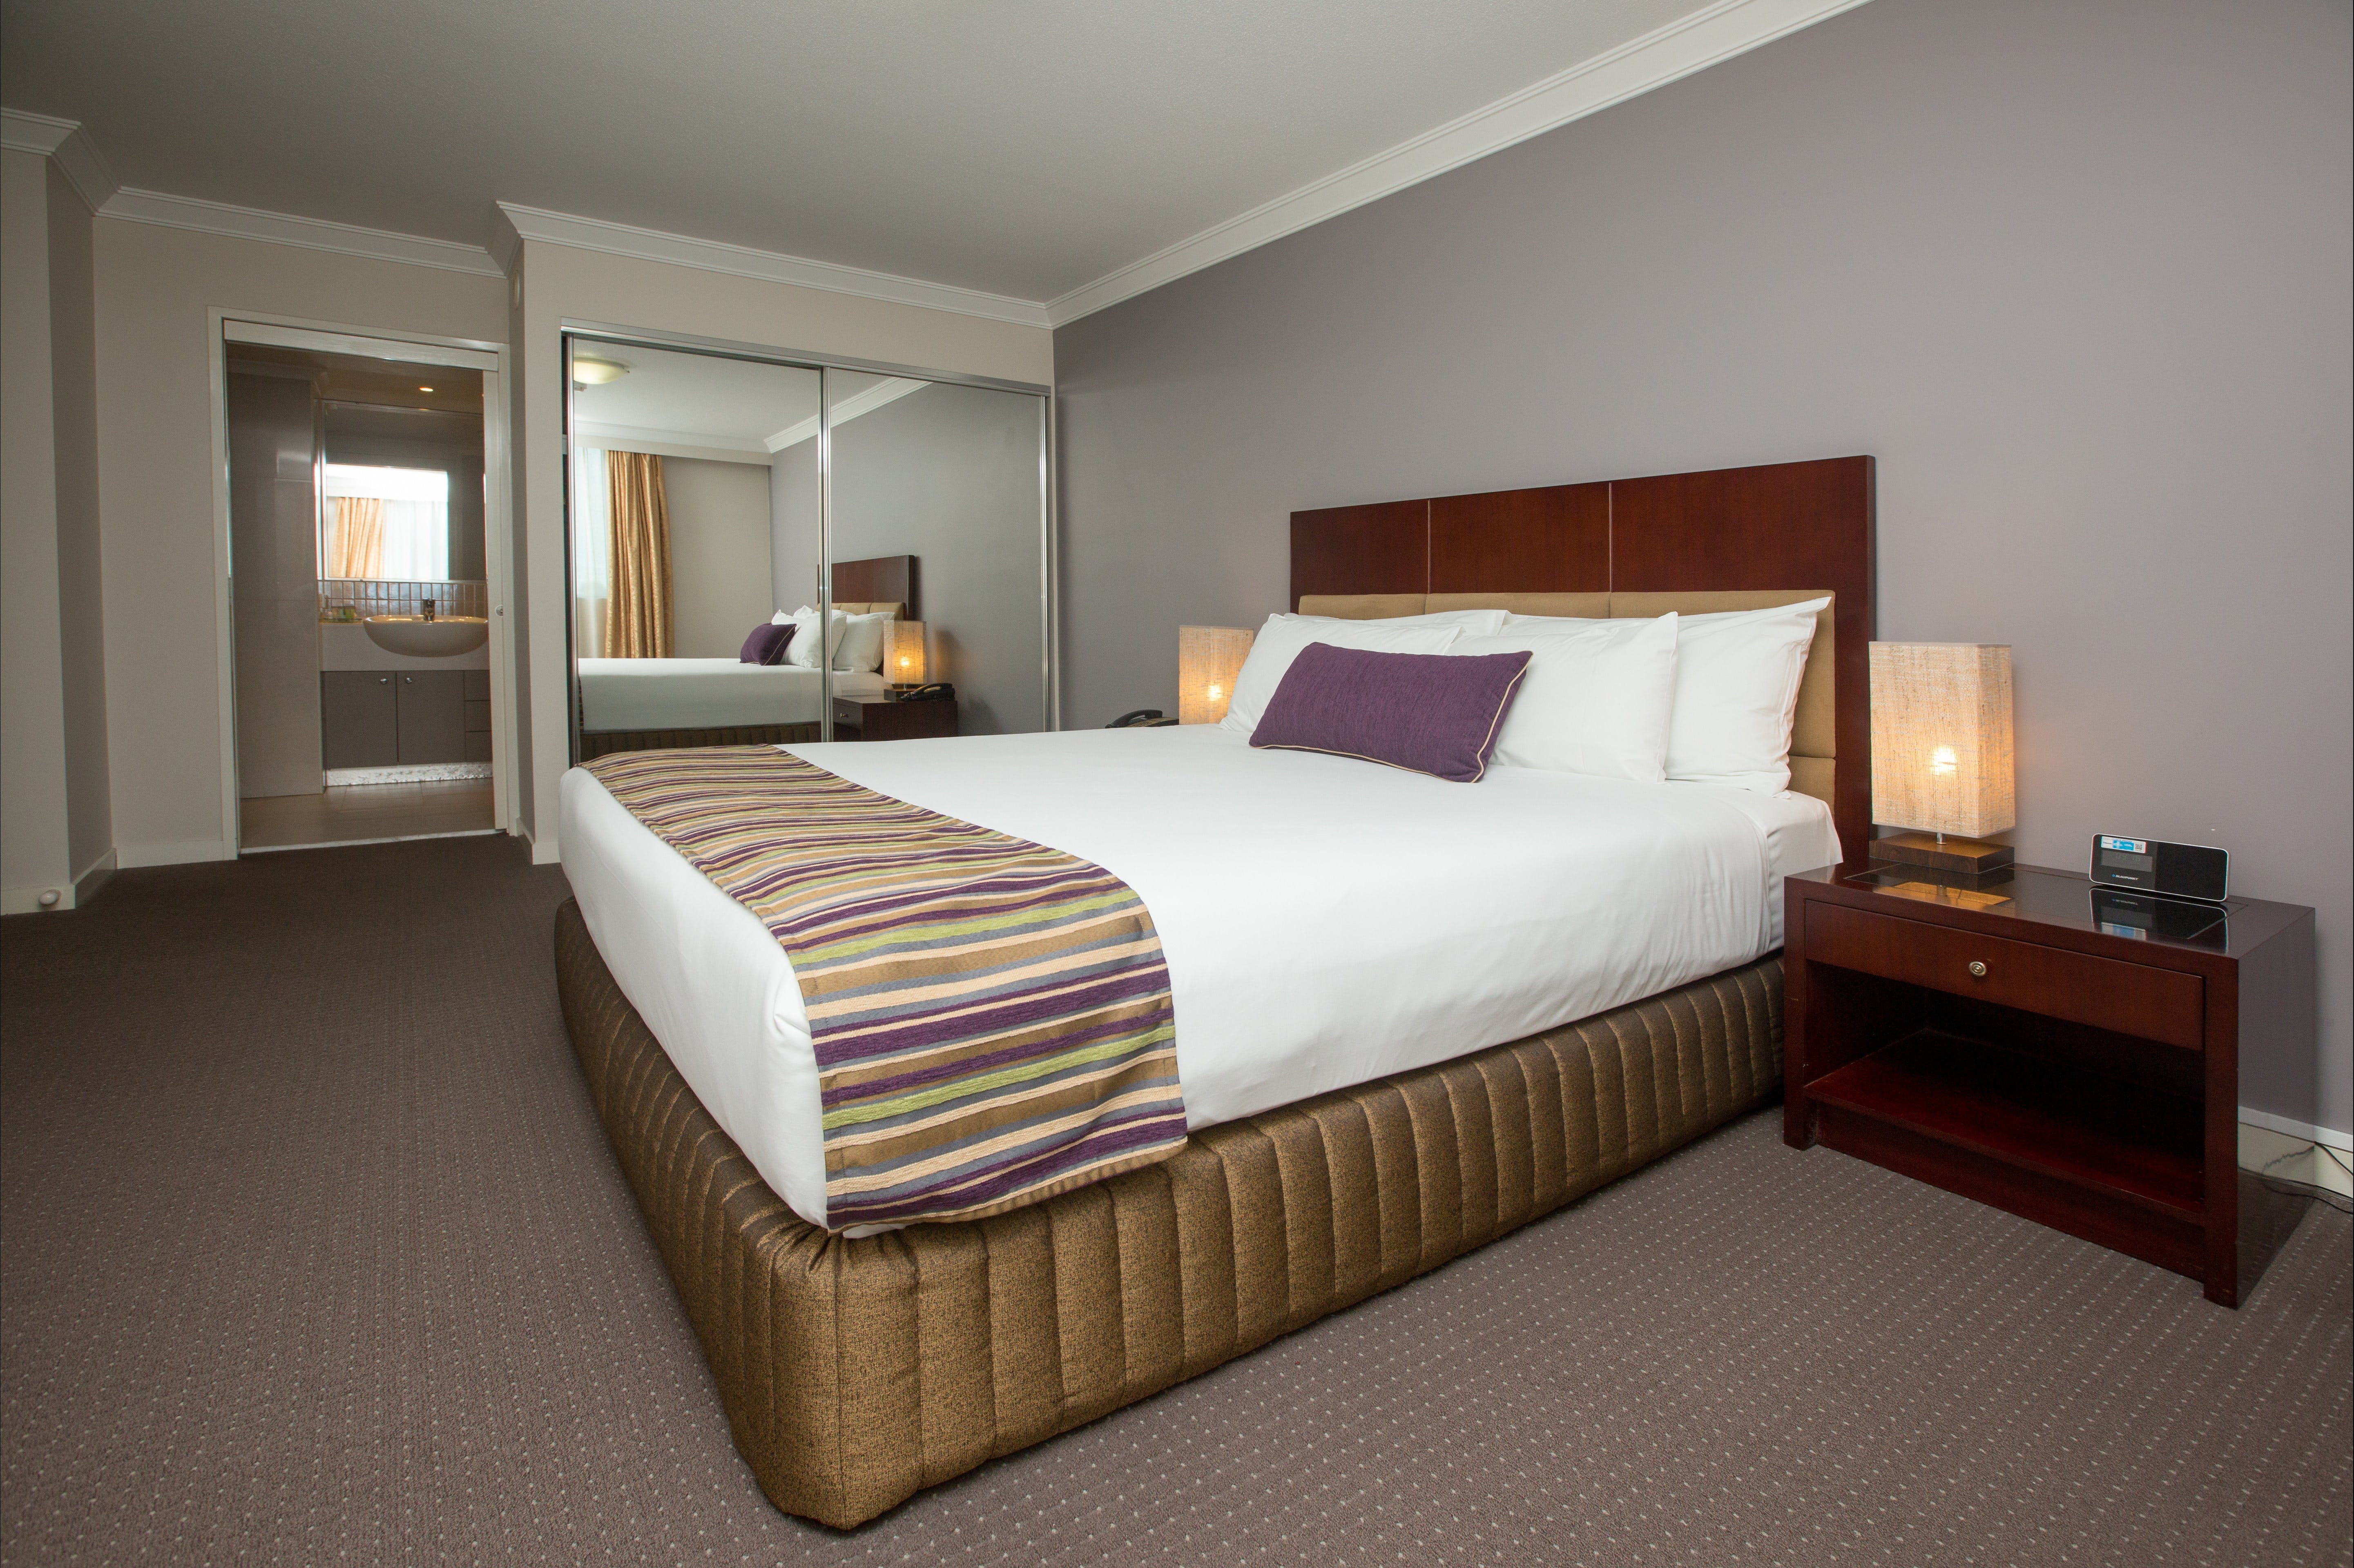 Hotel Gloria - Accommodation Sydney